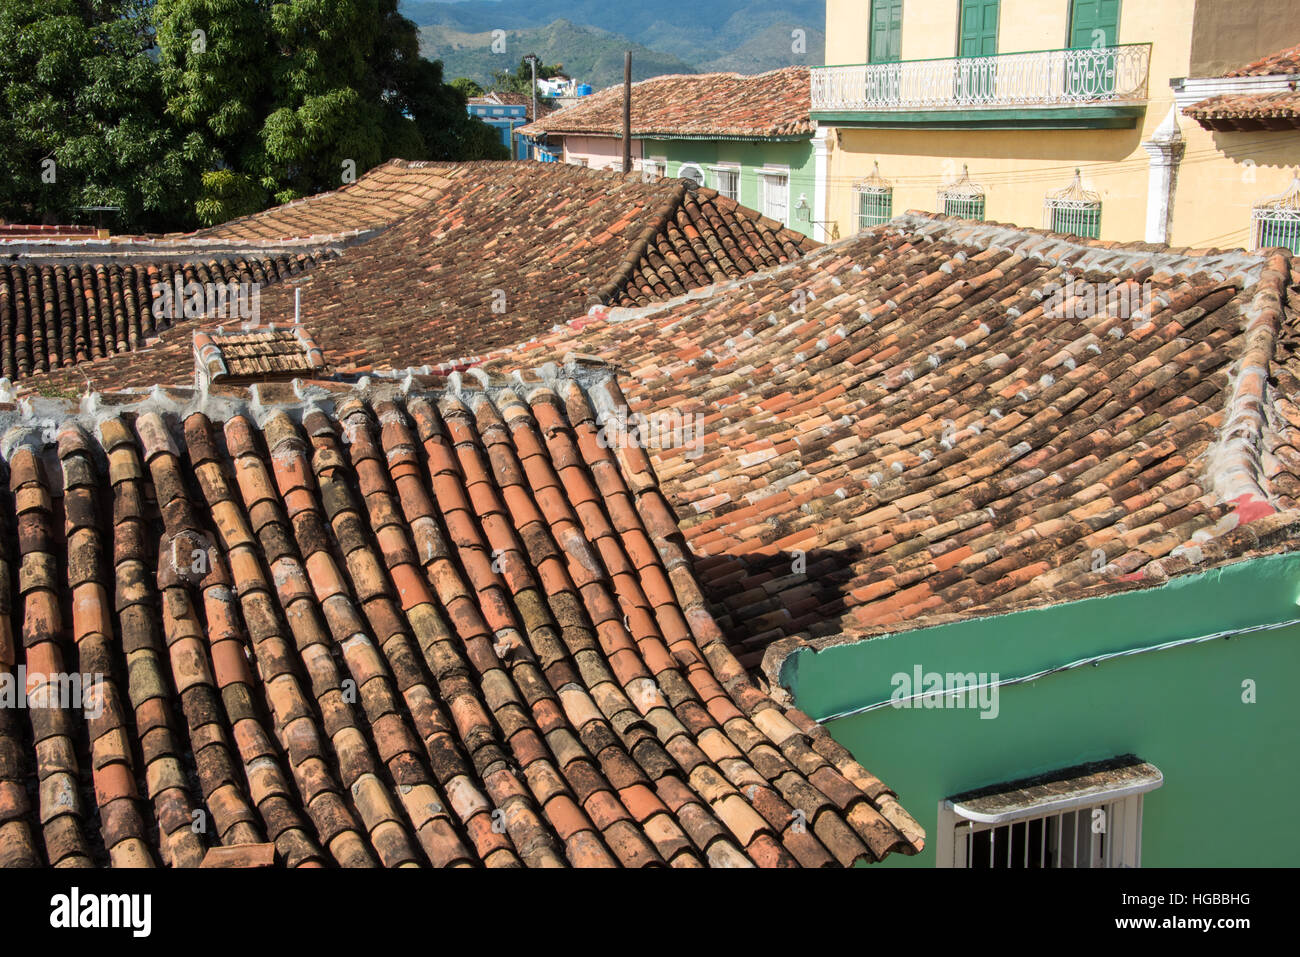 Les toits en terre cuite, Trinidad, Cuba Banque D'Images